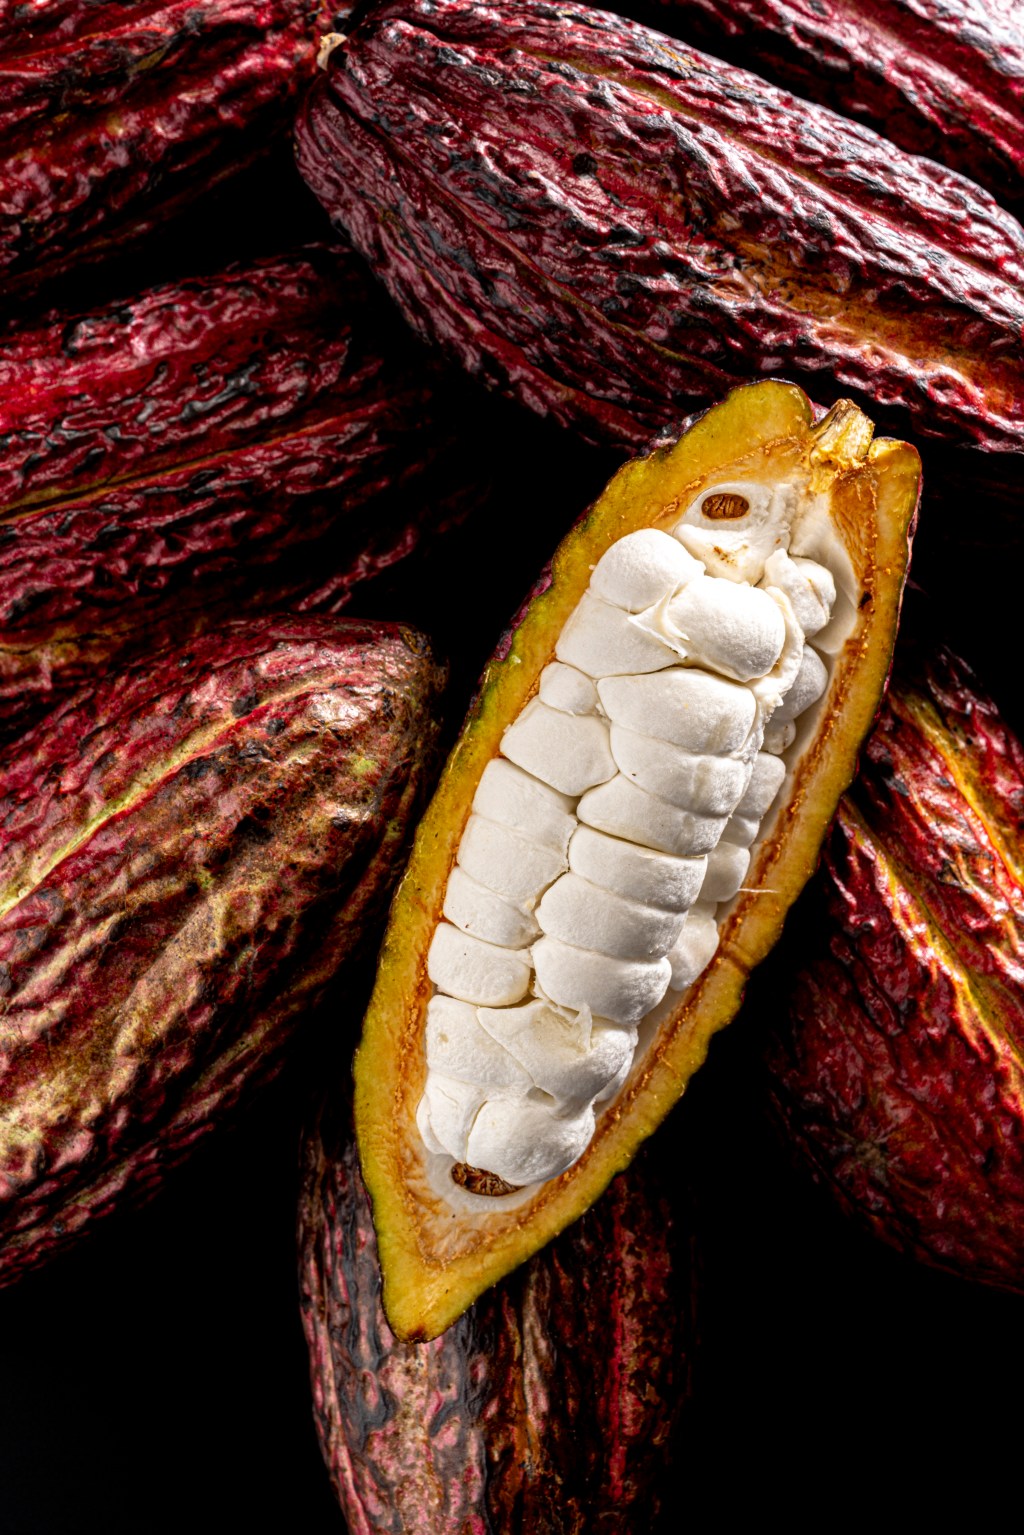 Wholefruit: lançamento da Cacao Barry aproveita a polpa do cacau, não só a amêndoa